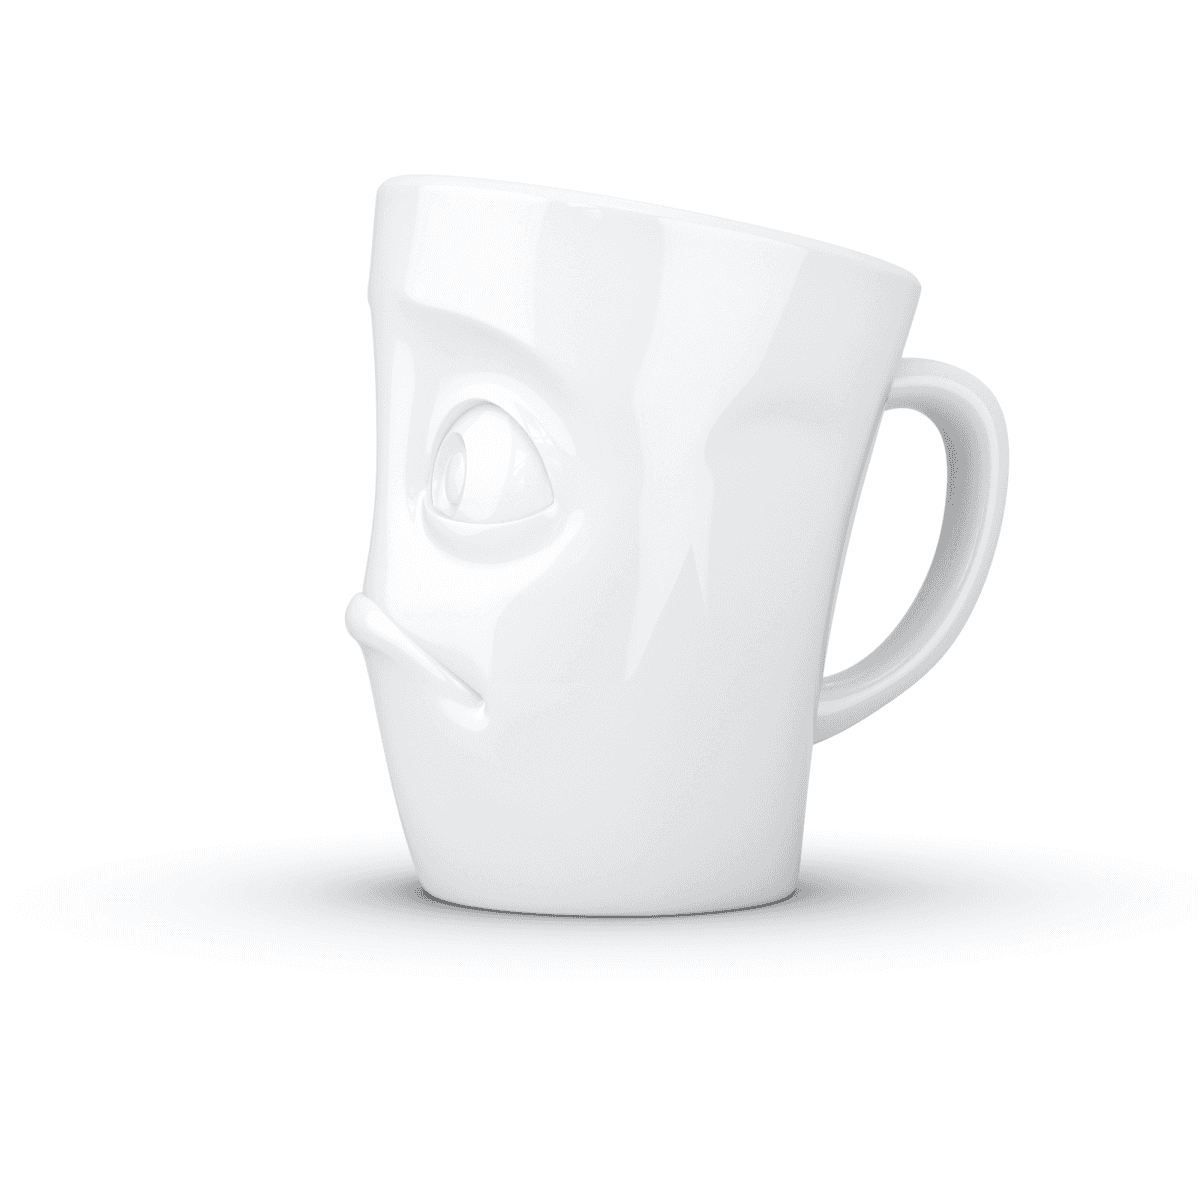 Immagine del prodotto Mug Broncio 3D in Porcellana 350 ml con Manico | TASSEN By Fiftyeight Products